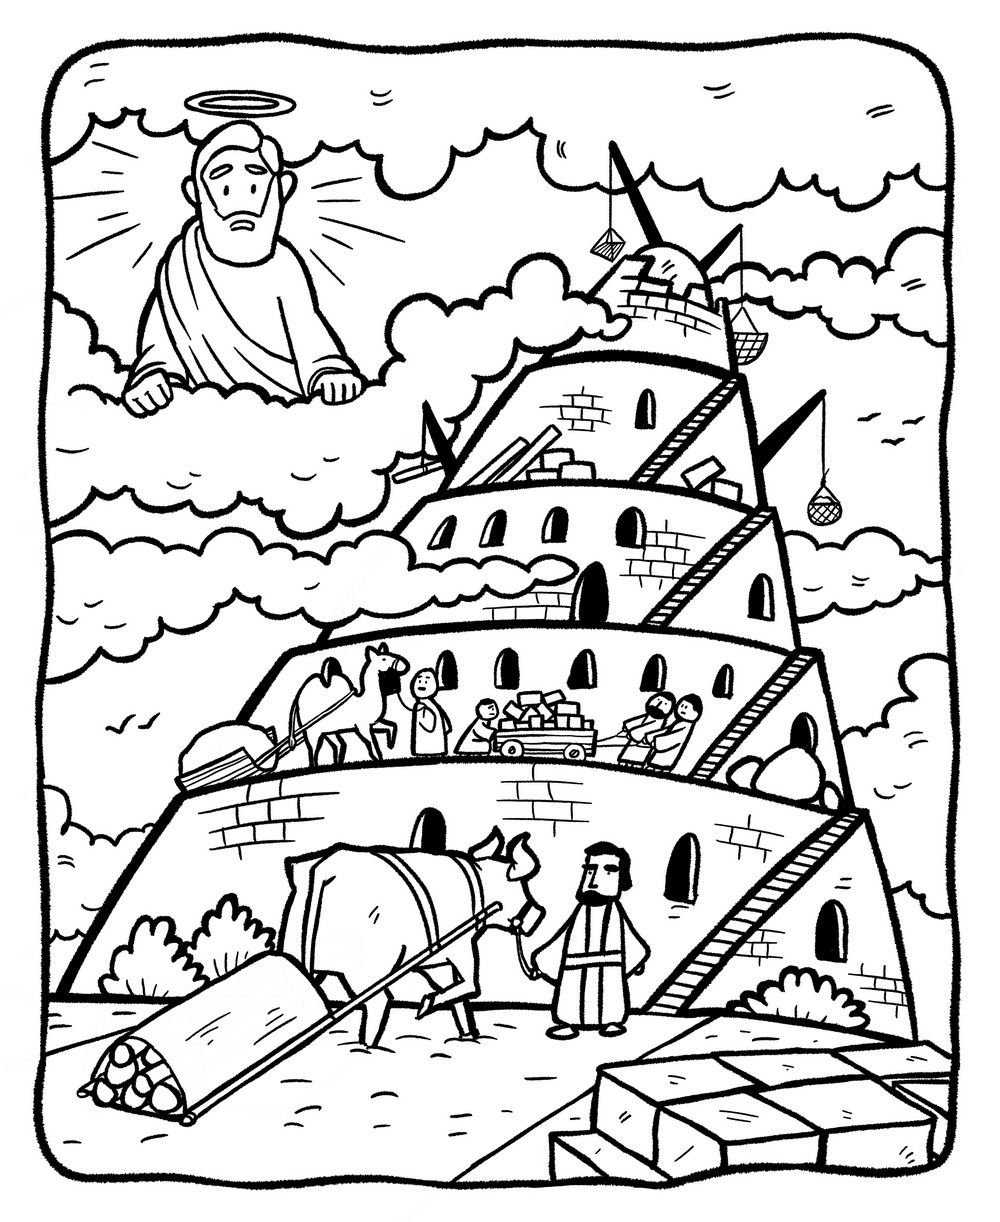 Иллюстрация к библейскому сюжету о Вавилонской башне